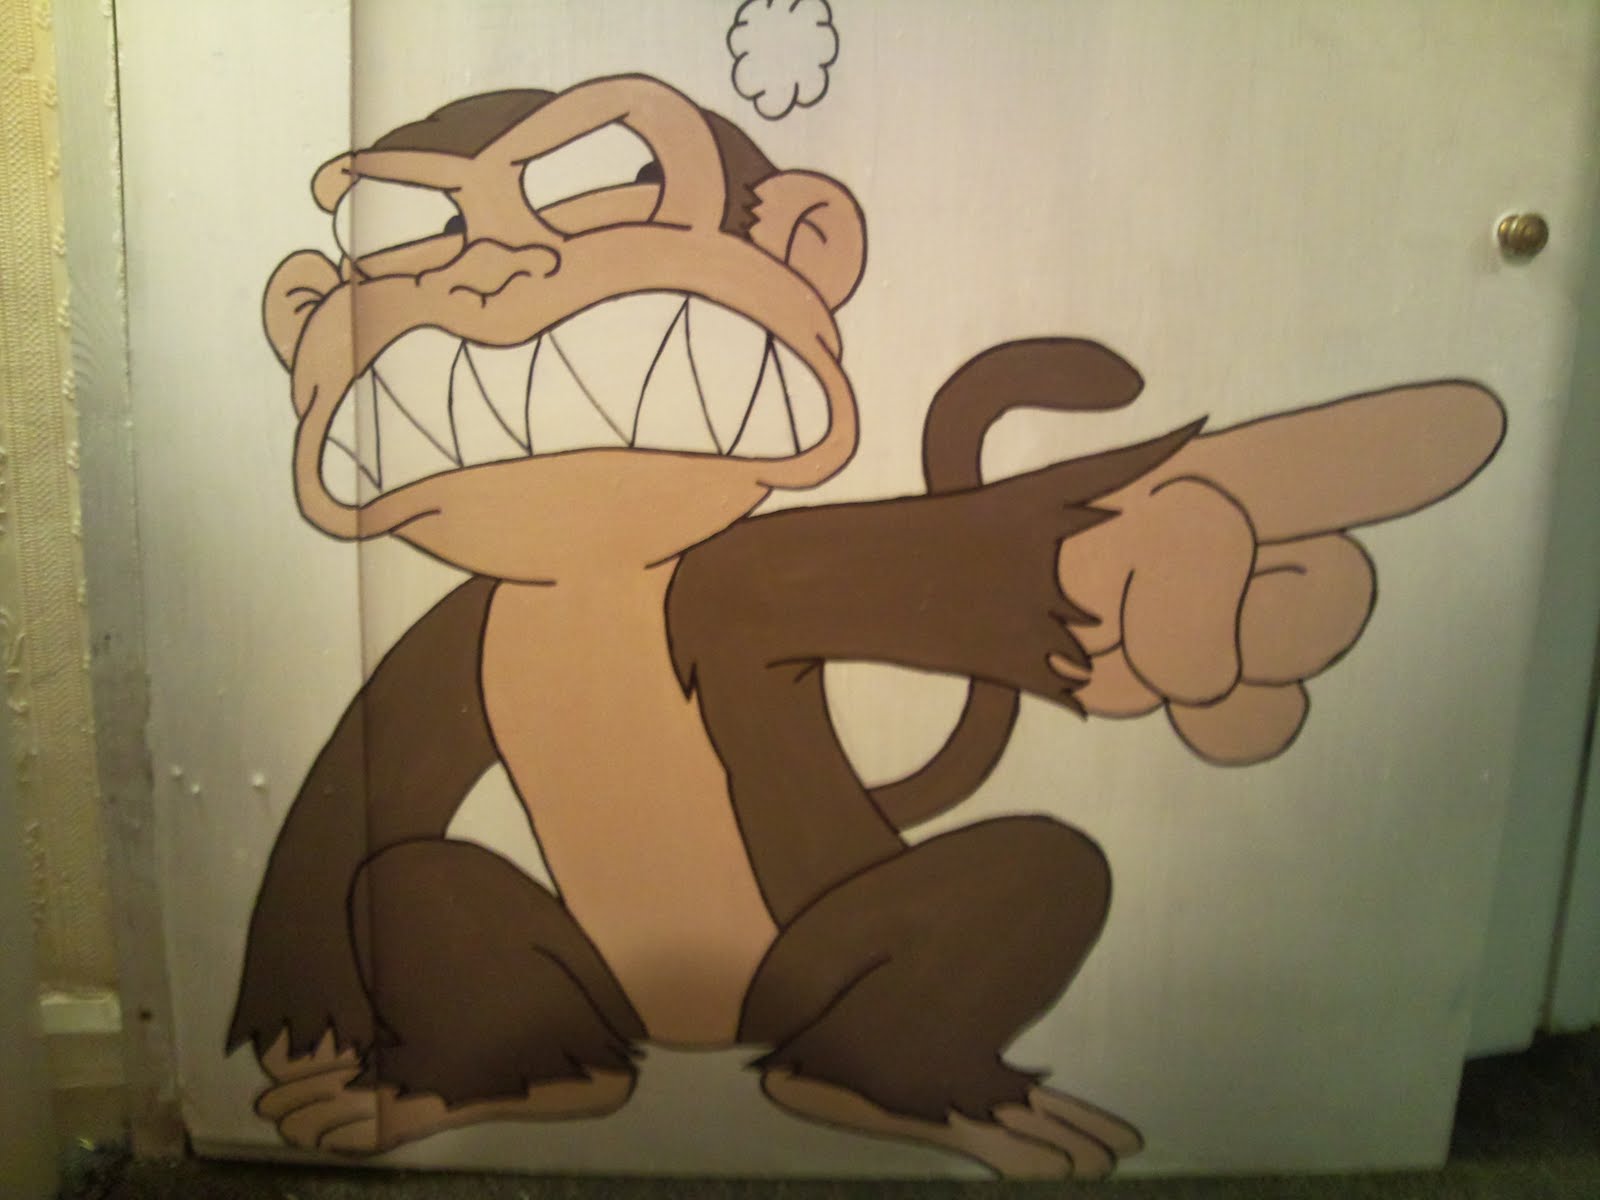 Evil Monkey Family Guy Wallpaper Image For